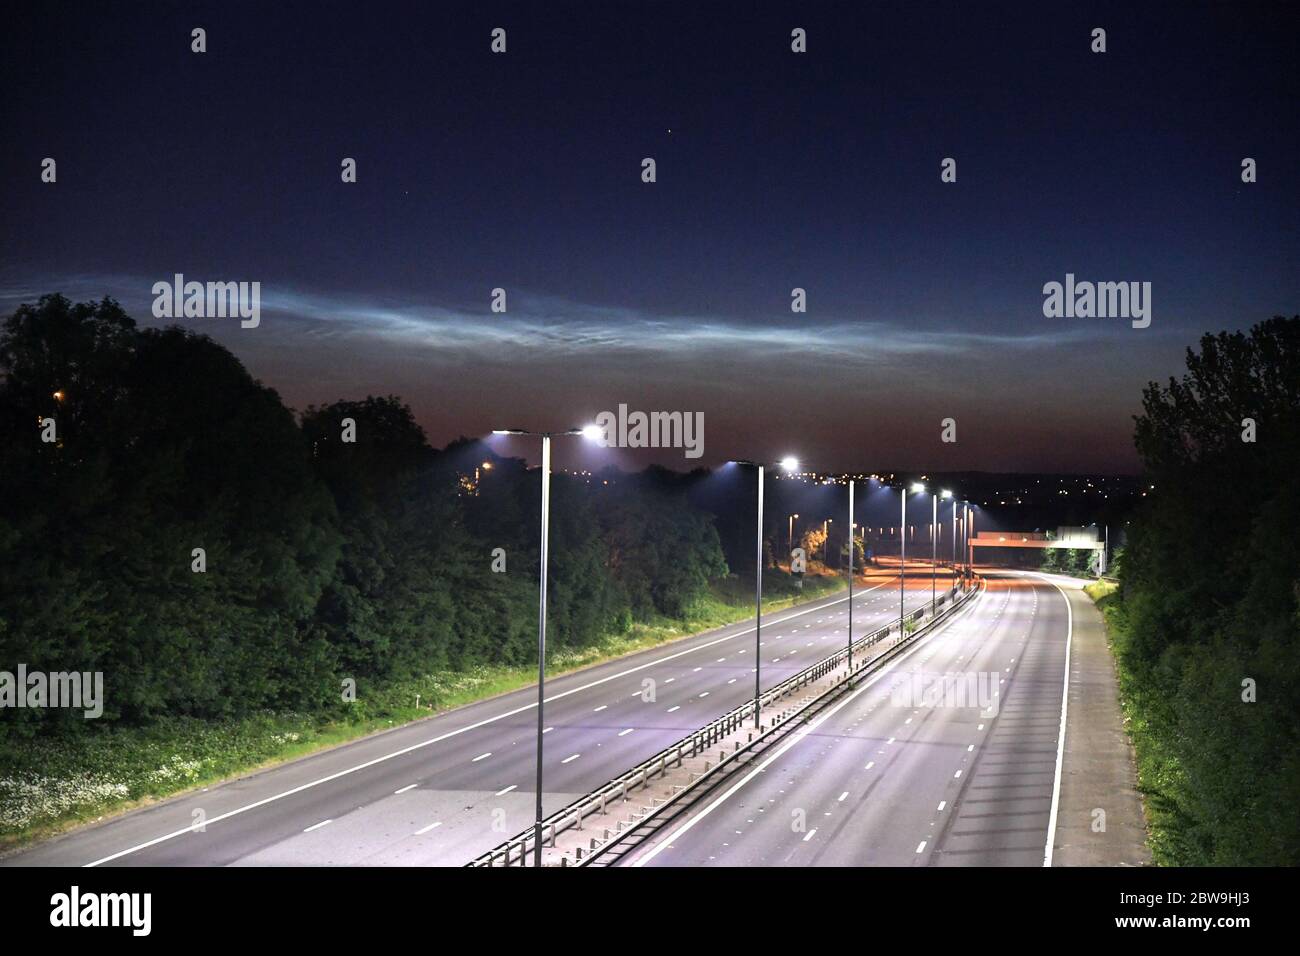 West Bromwich, West Midlands, 31. Mai 2020. Ein Blick von der Autobahn M5 von West Bromwich, Richtung Walsall mit seltenen Nachtakten Wolken beleuchtet in den Nachthimmel. Die schwachen wolkenähnlichen Phänomene bilden sich nur in der oberen Erdatmosphäre. Im Gegensatz zu den niederen Wolken, die mit dem Wetter in Verbindung stehen, bilden sich diese Wolken sehr hoch, etwa 85,300 Meter (53 Meilen) über der Erdoberfläche, in der Mesosphäre. Sie bestehen wahrscheinlich aus gefrorenem Wasser oder Eiskristallen und sind nur in der astronomischen Dämmerung sichtbar. Das Wort noctilucent bedeutet im Lateinischen ungefähr ‘Nachtschienen'. Dies sind die höchsten Clou Stockfoto